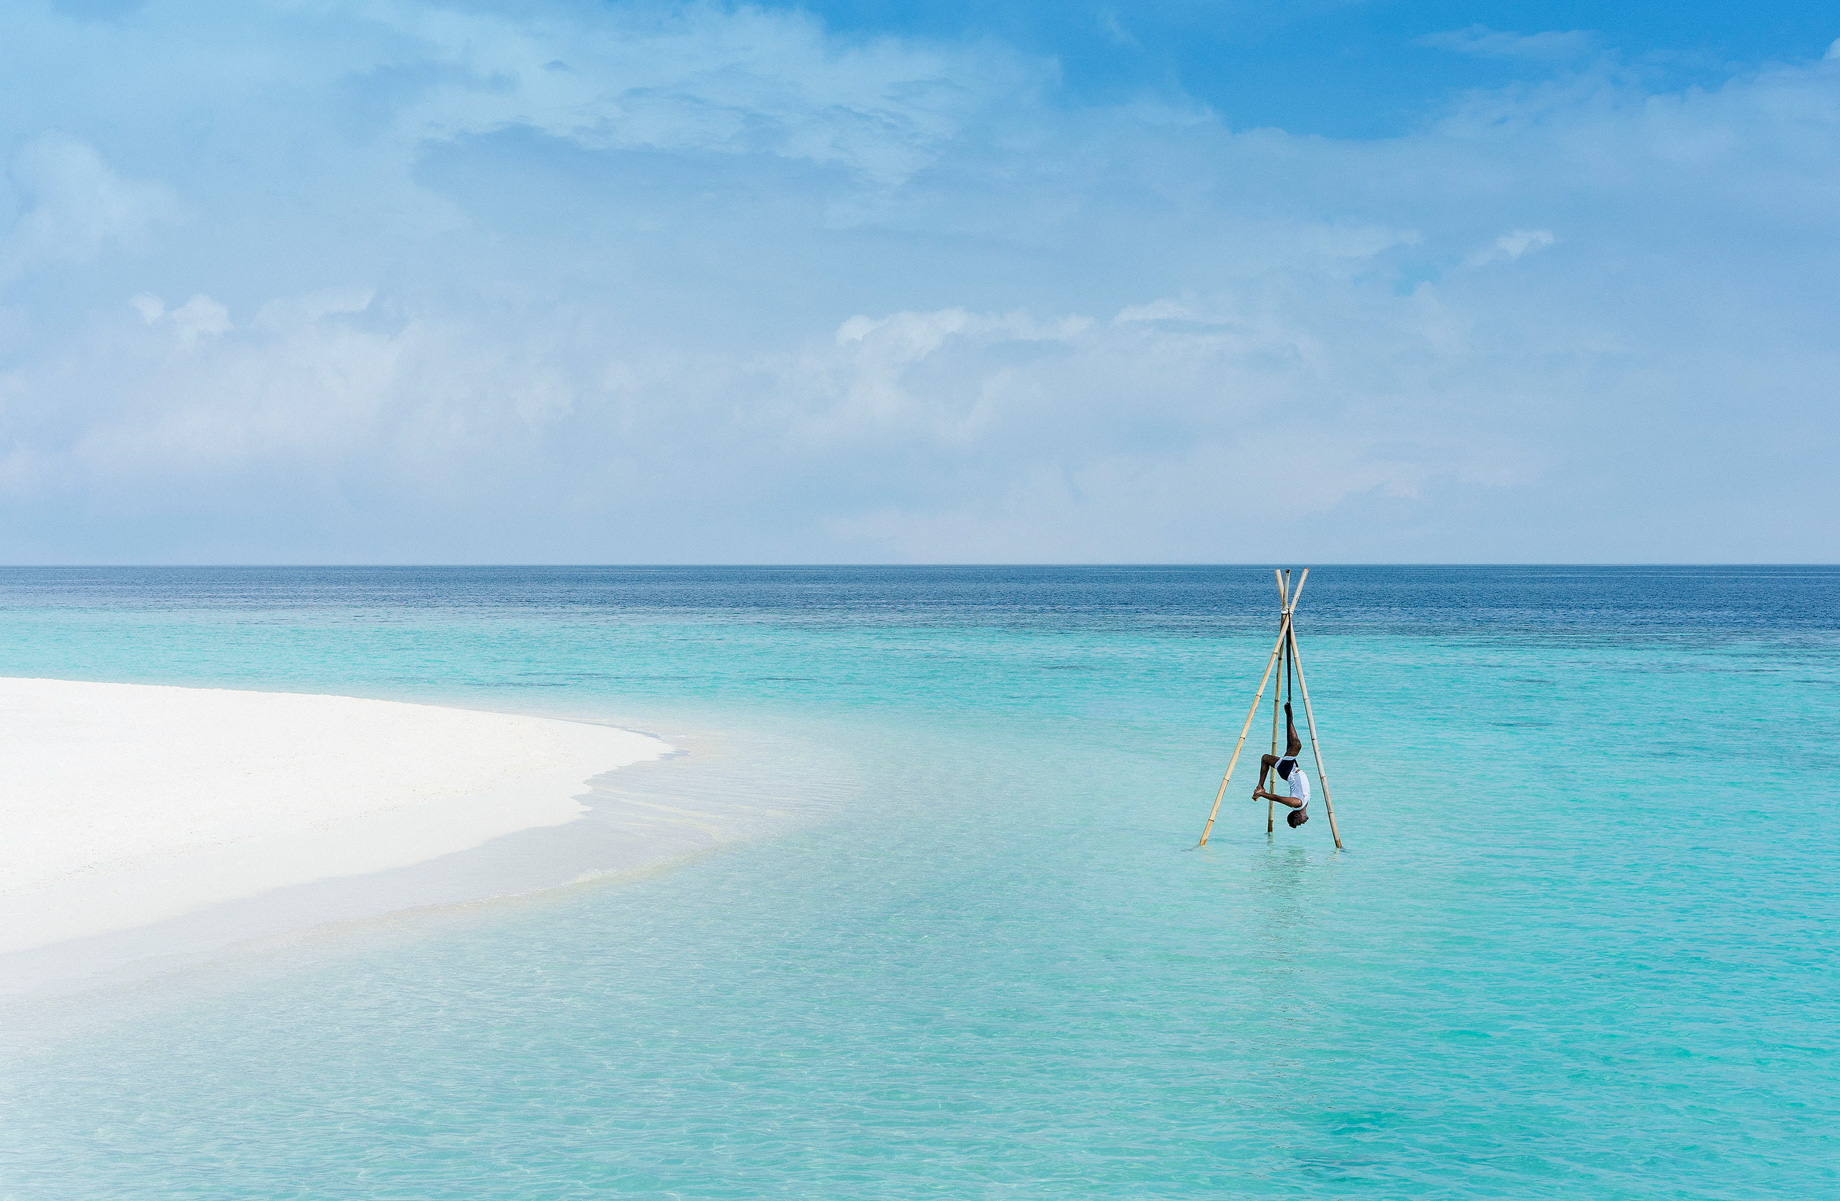 Anantara Kihavah Maldives Villas Resort - Baa Atoll, Maldives - Overwater Yoga